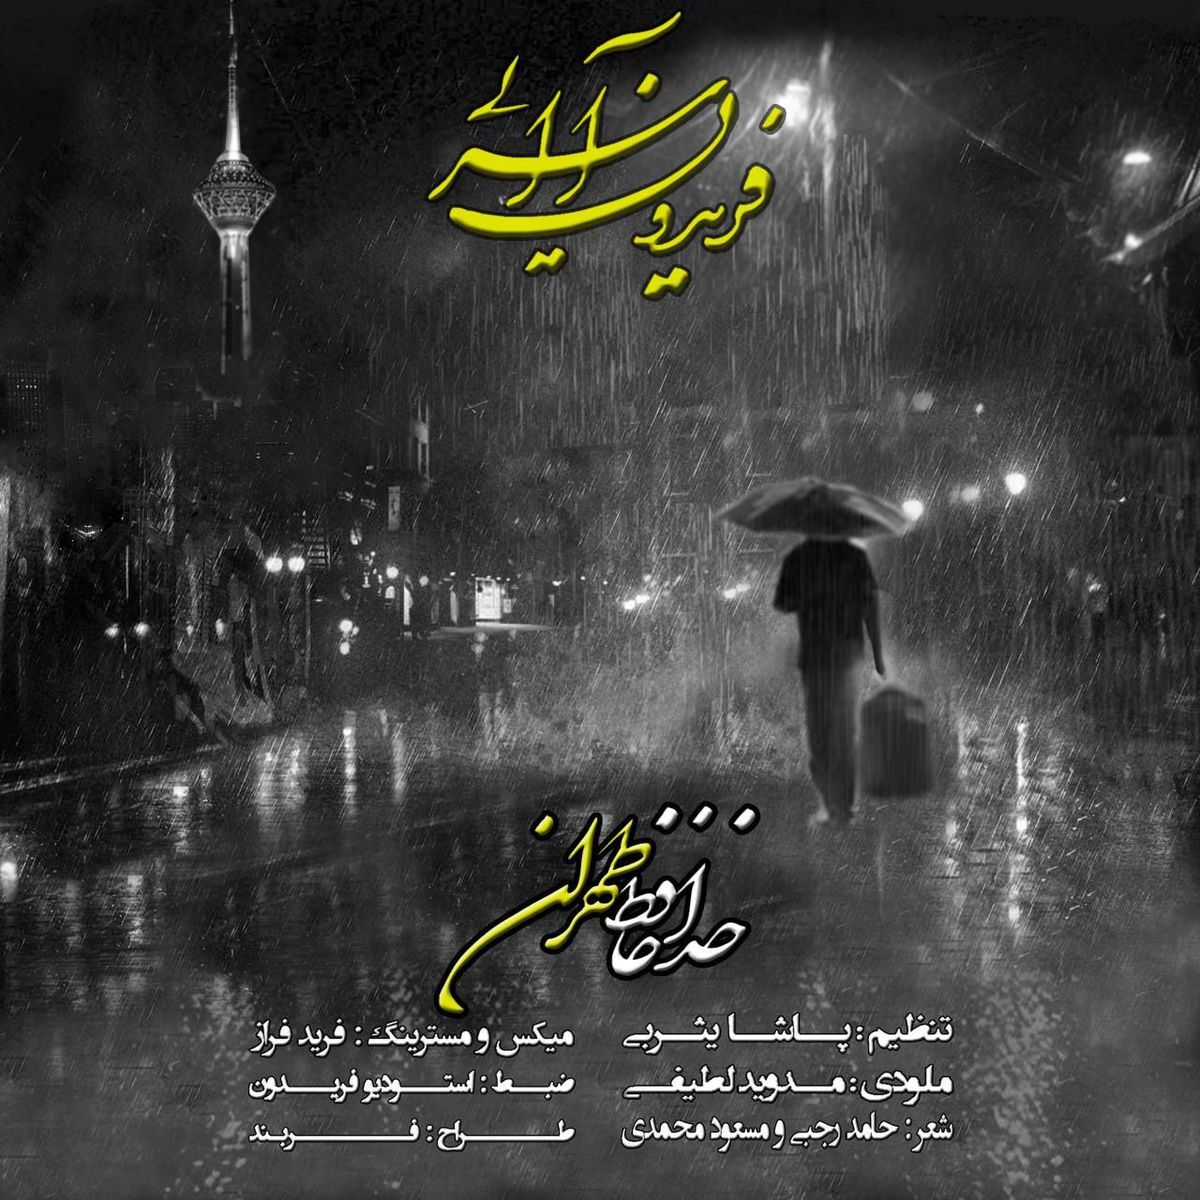 آهنگ جدید فریدون آسرایی با نام "خداحافظ طهران"